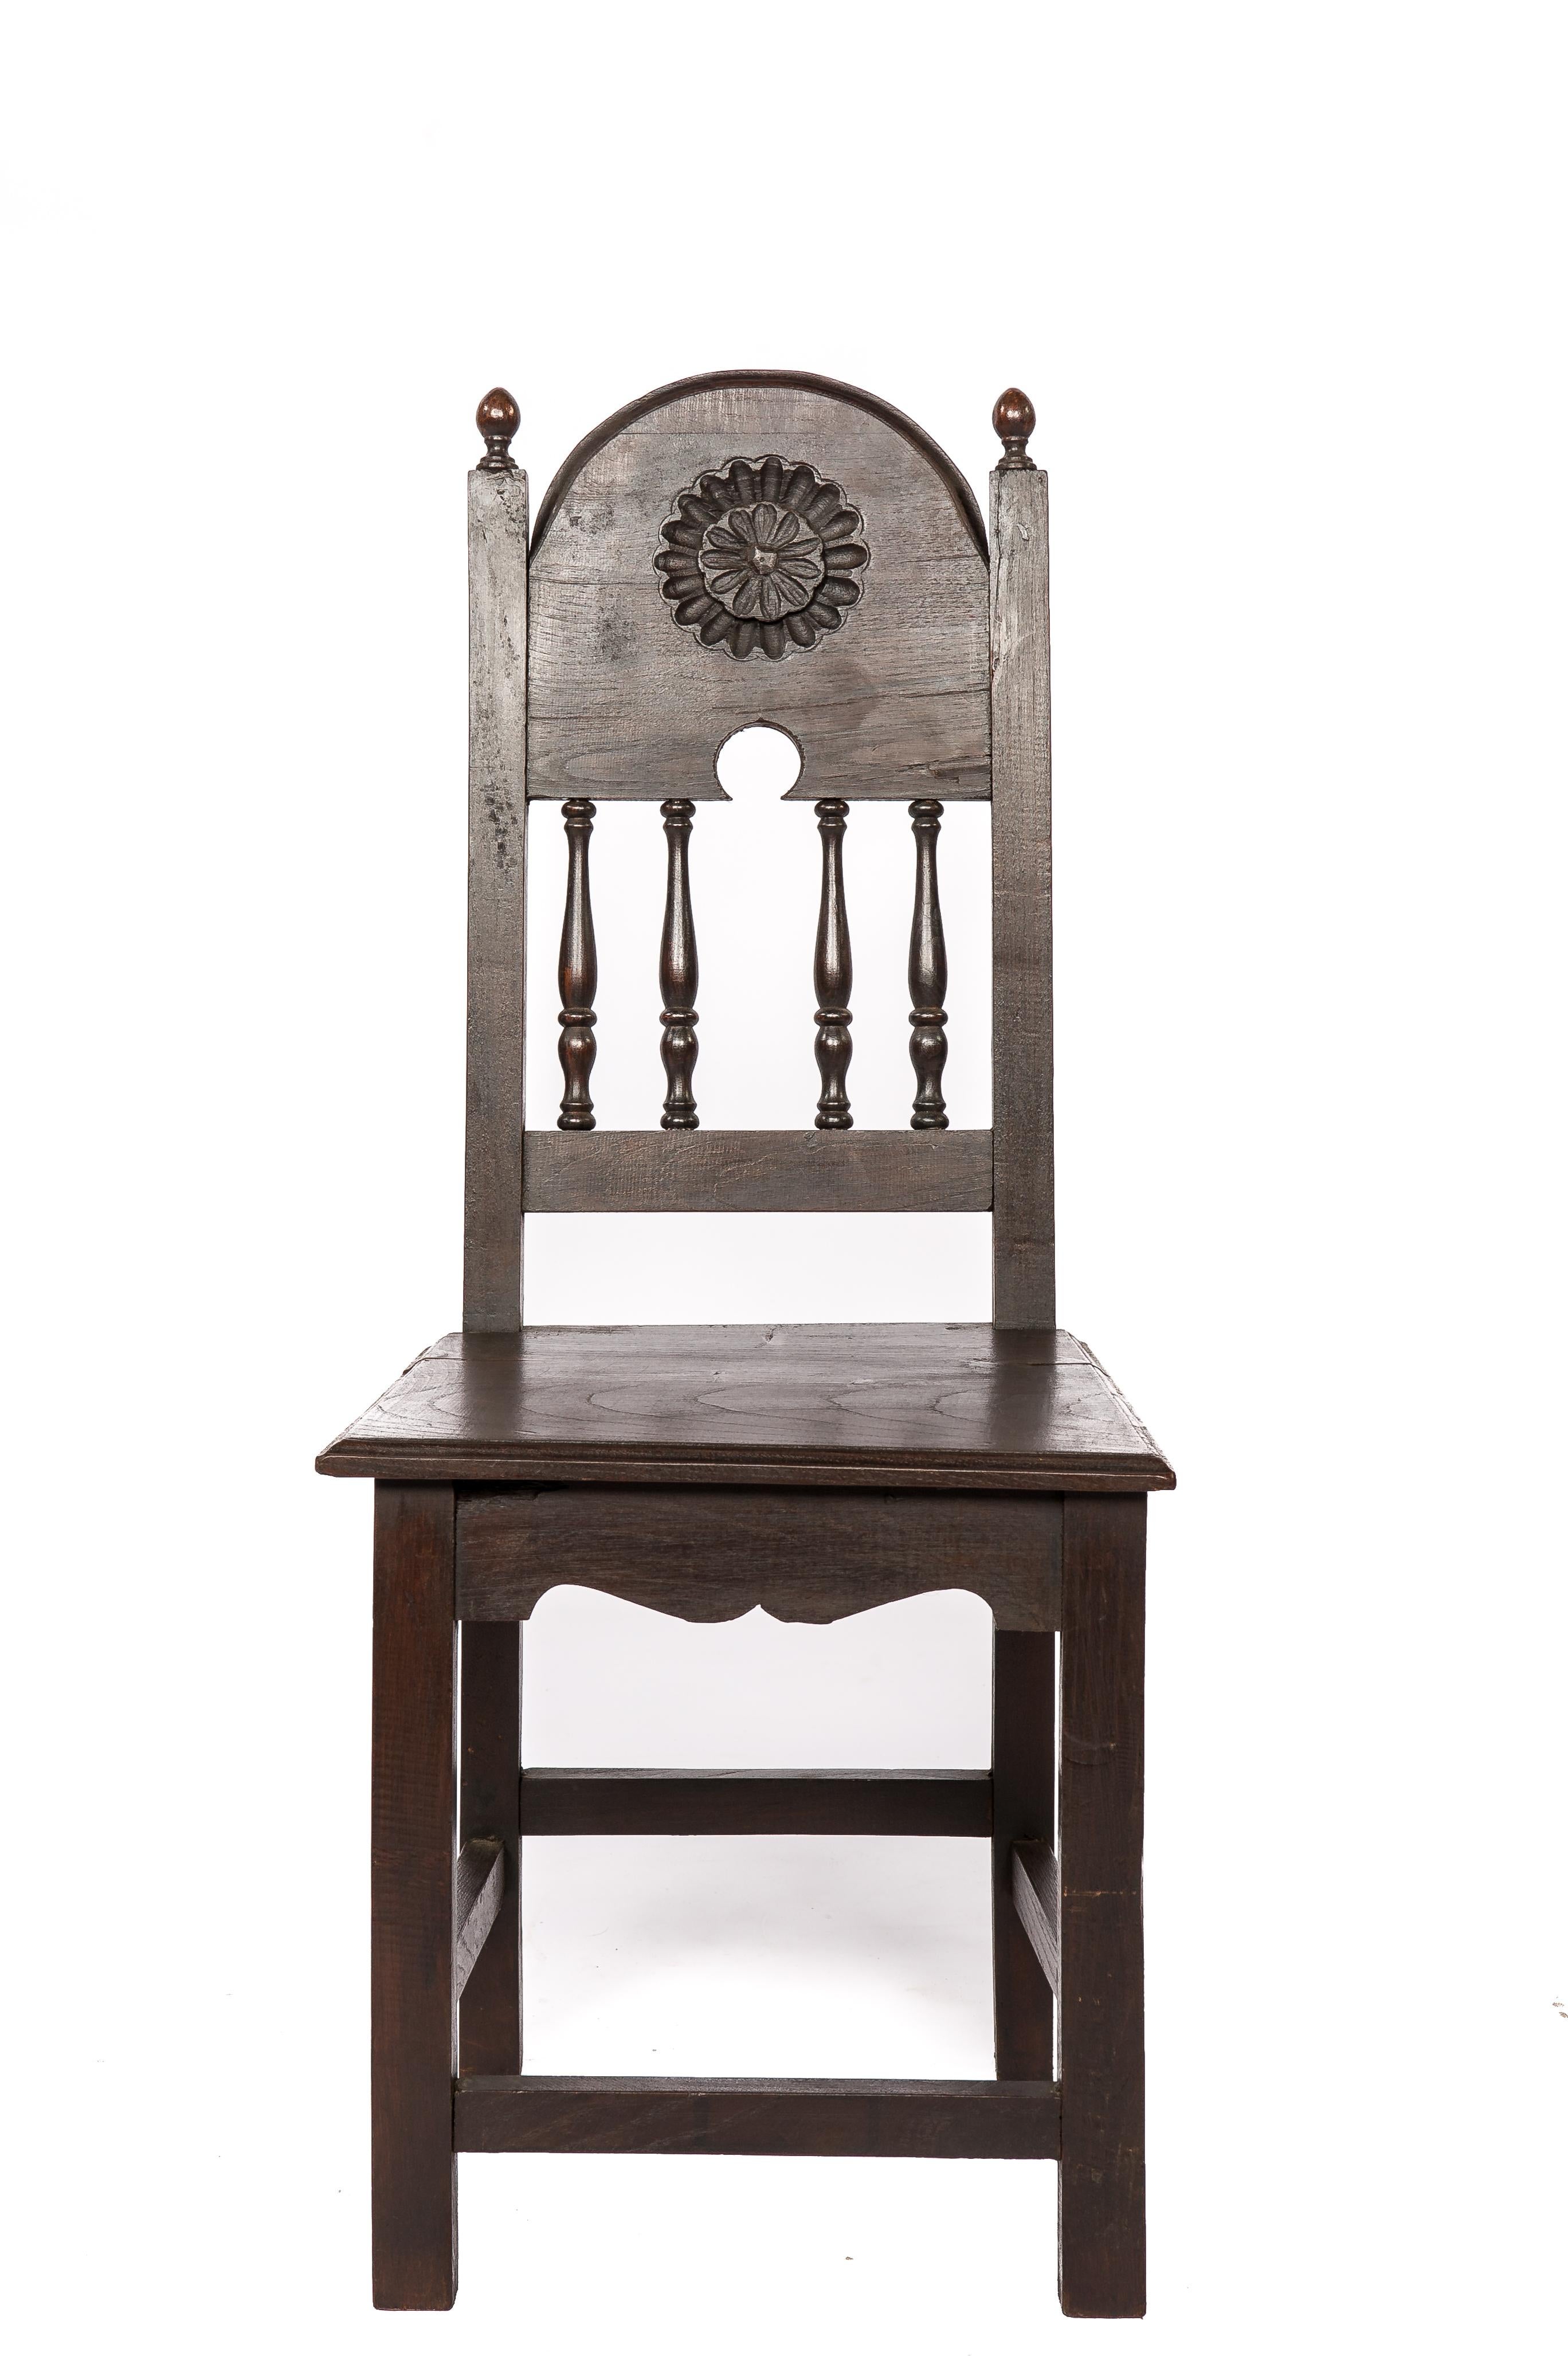 Hier wird ein wunderschönes Set aus vier identischen Stühlen angeboten, die im Spanien des frühen 20. Jahrhunderts aus massivem Kastanienholz gefertigt wurden. Diese Stühle sind ein Zeugnis spanischer Handwerkskunst und zeichnen sich durch ein